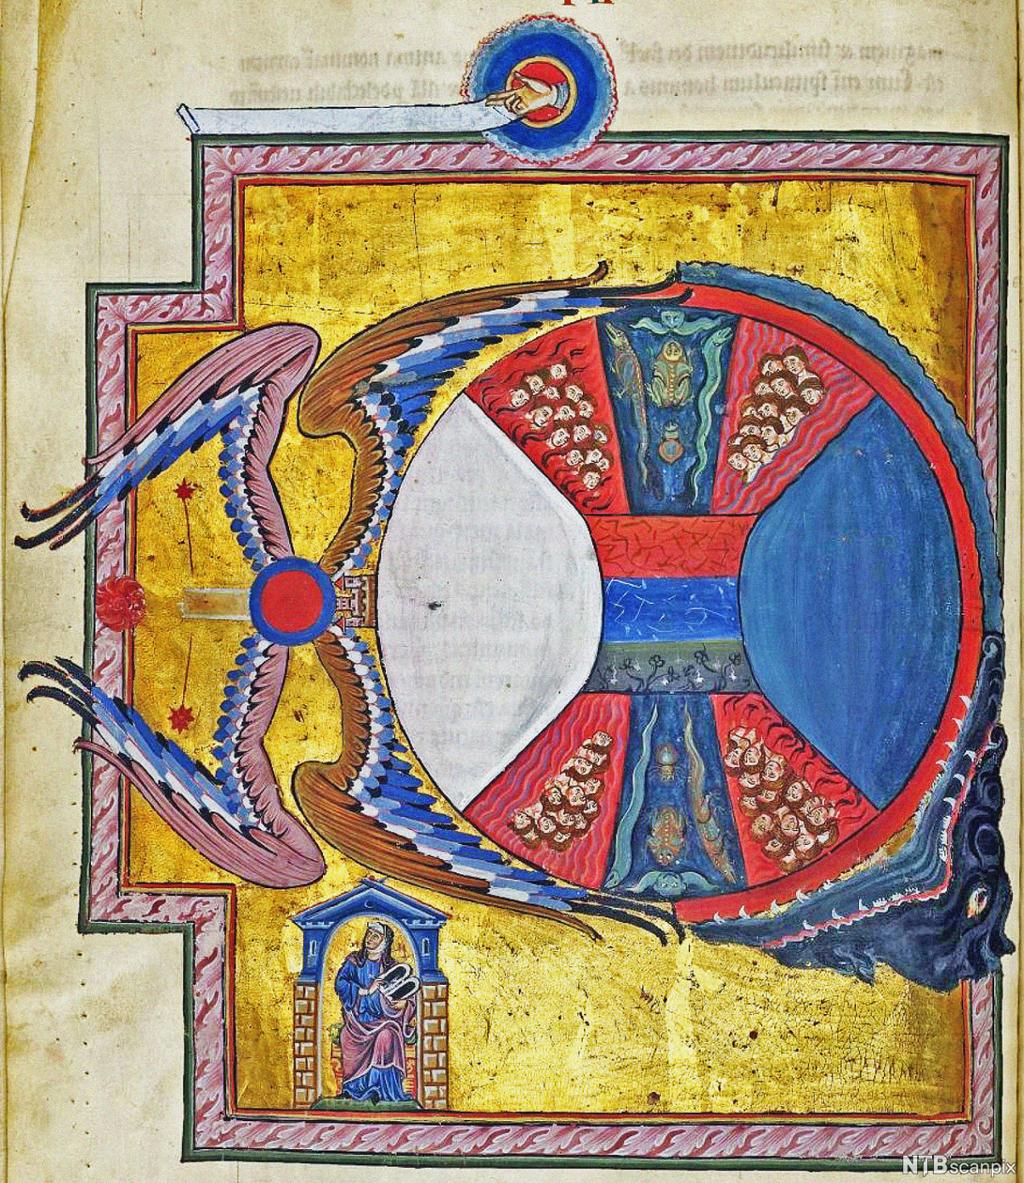 Måleri av ein sirkel omgitt av vengjer og eit gapande monster, fylt med ulike symbol. Under sirkelen sit ei nonne i eit hus. 